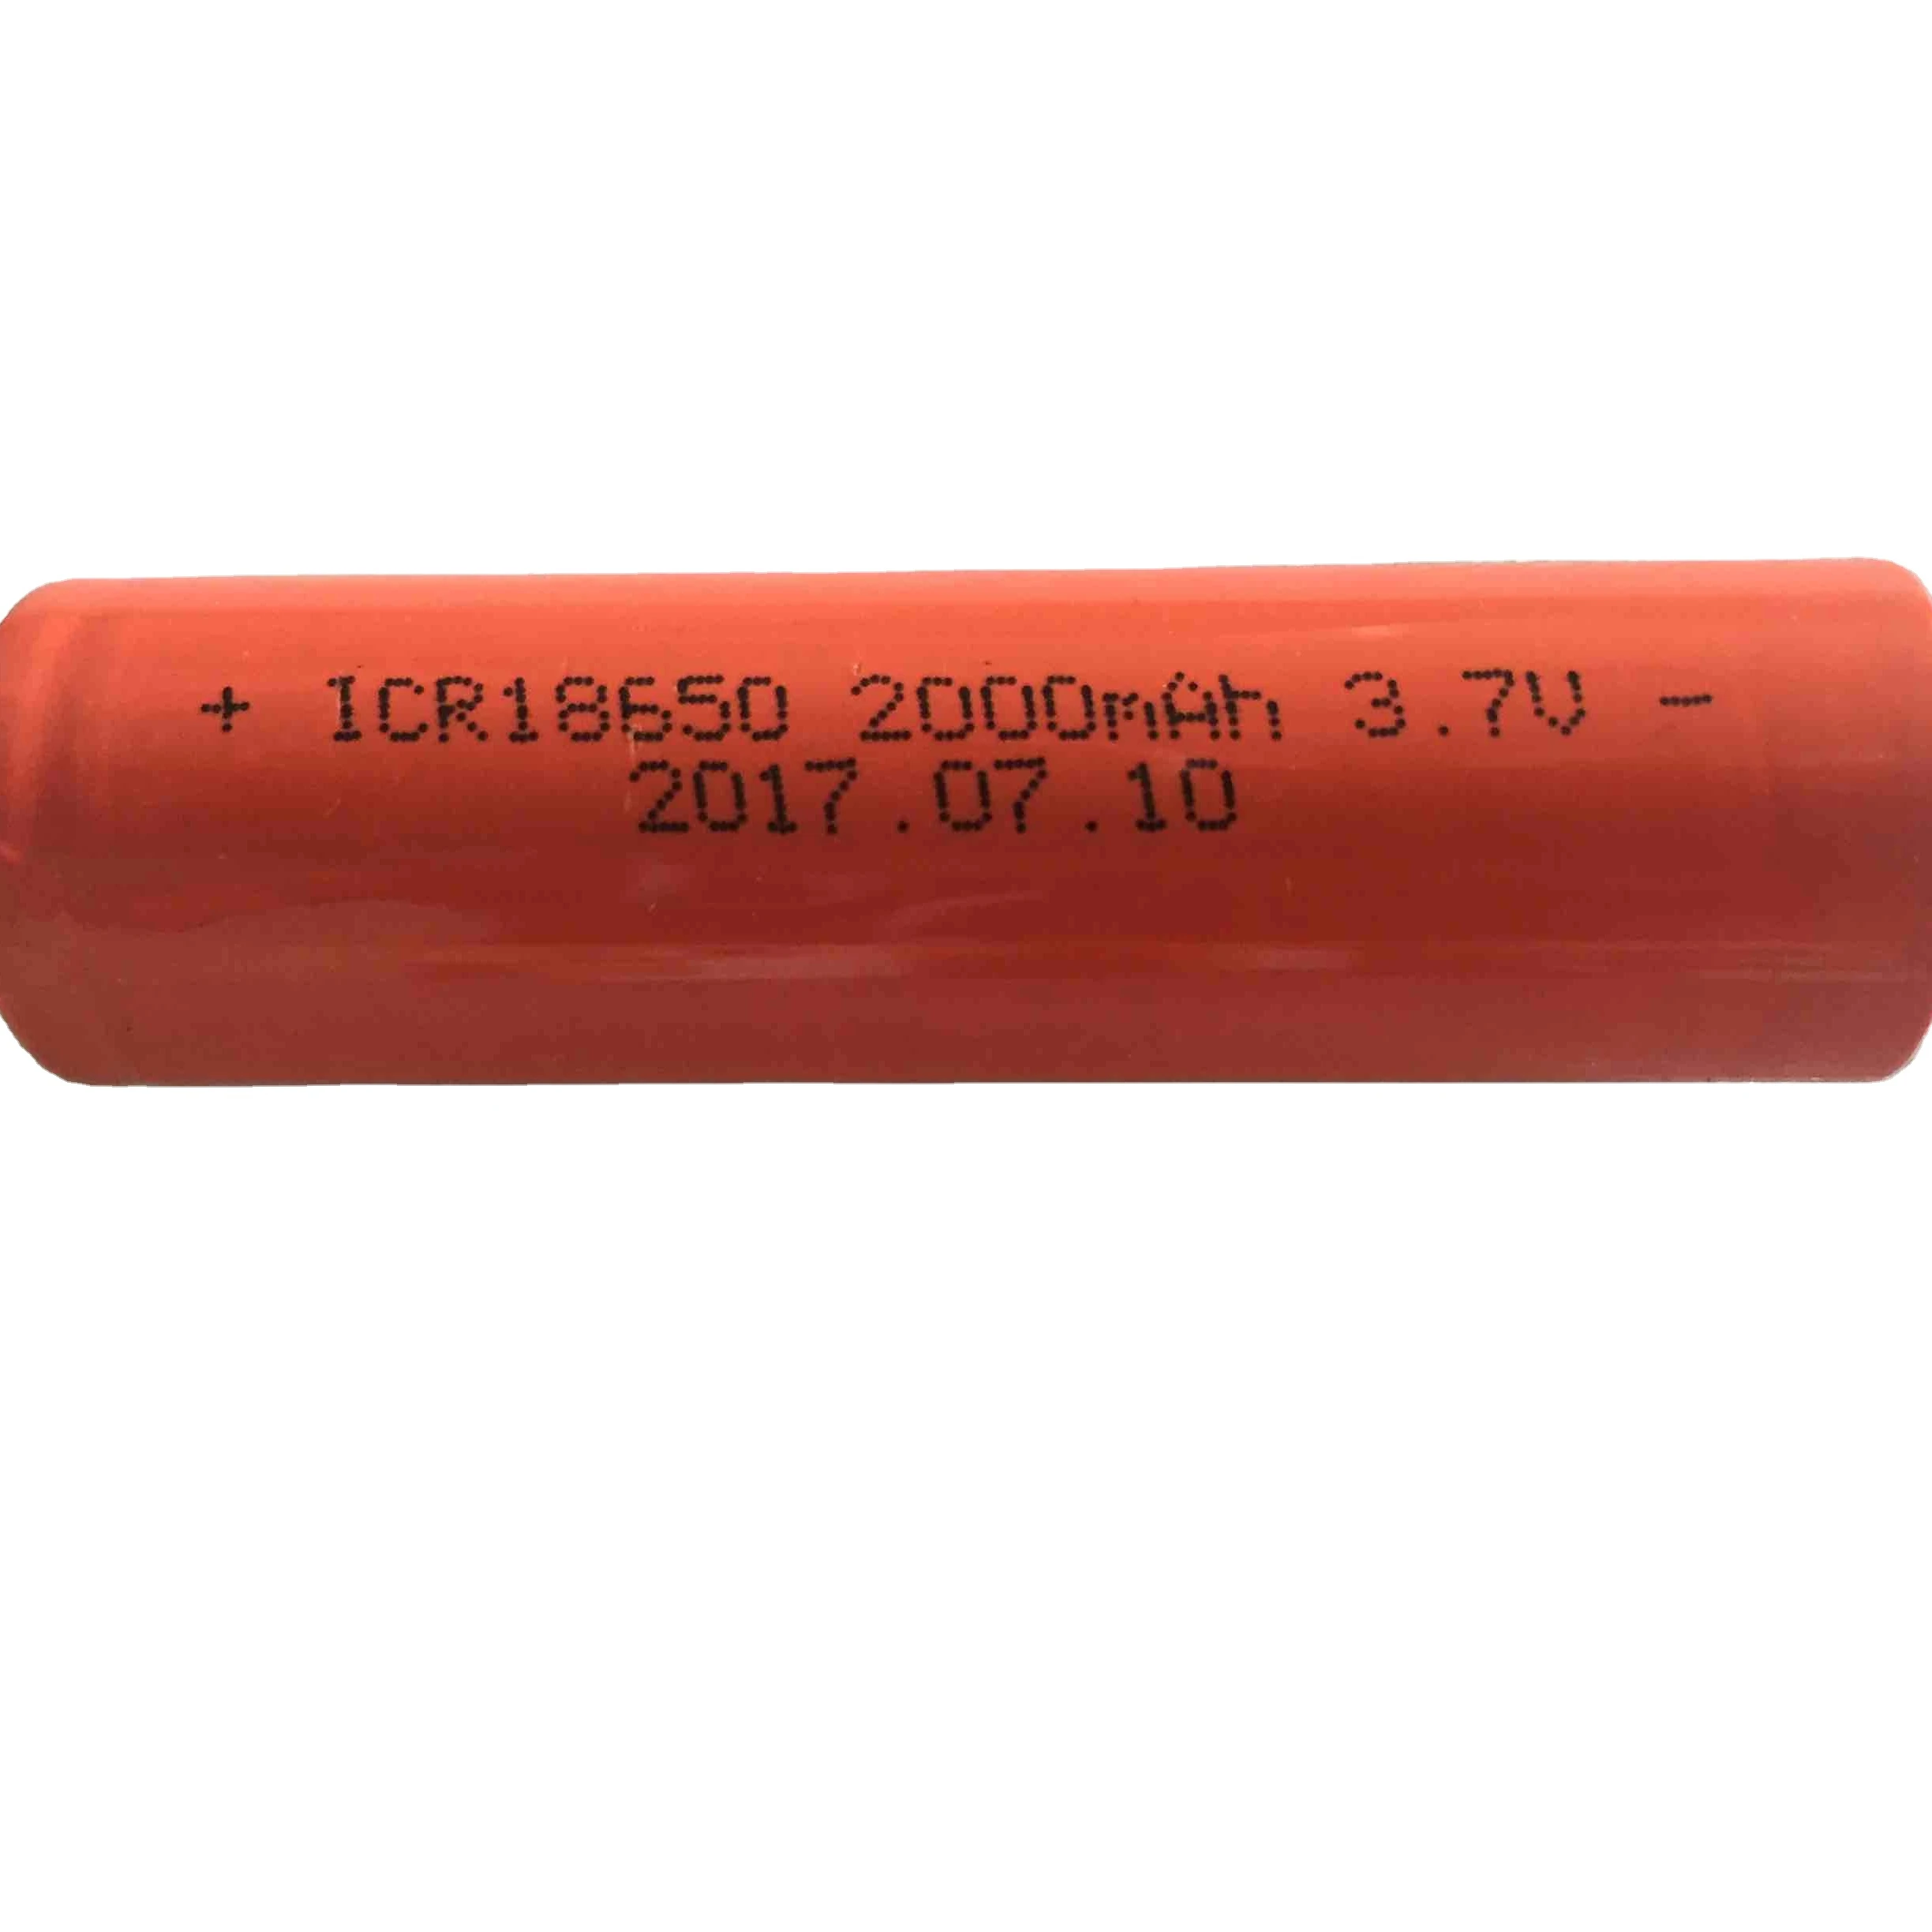 Li-ion 3.7V ICR18650 2000mAh lithium ion battery